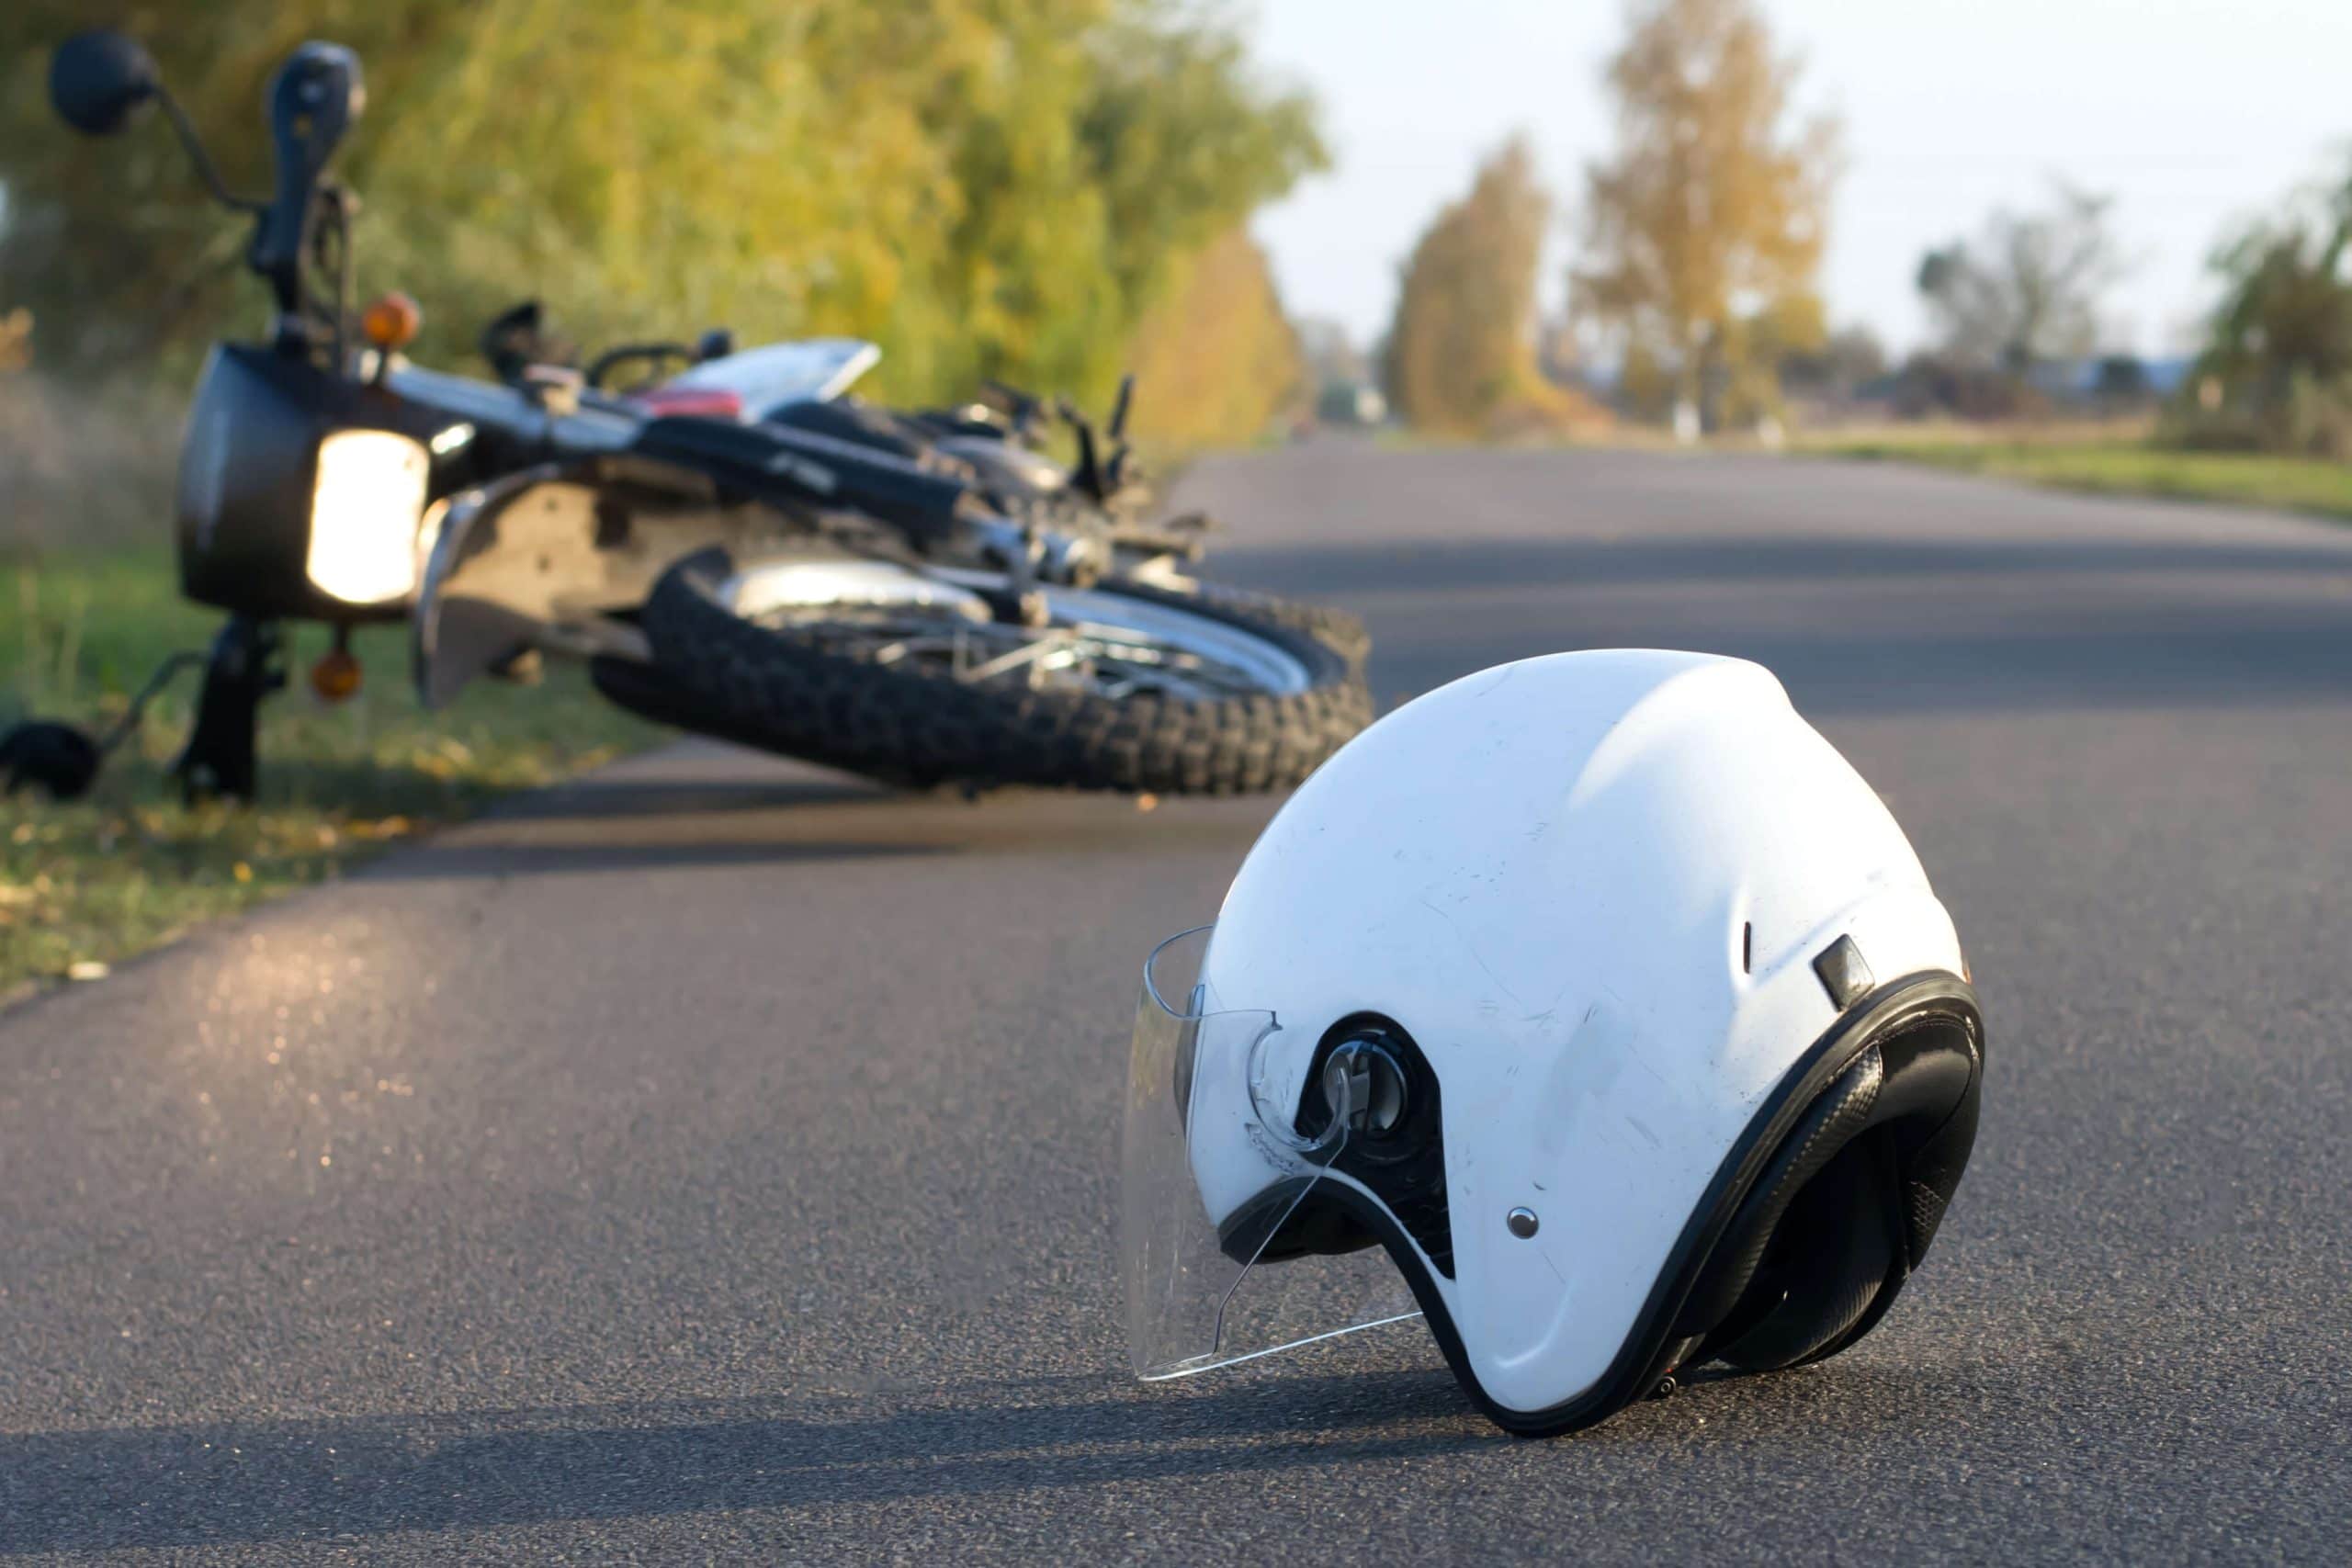 motorcycle helmet on asphalt in front of overturned motorcycle